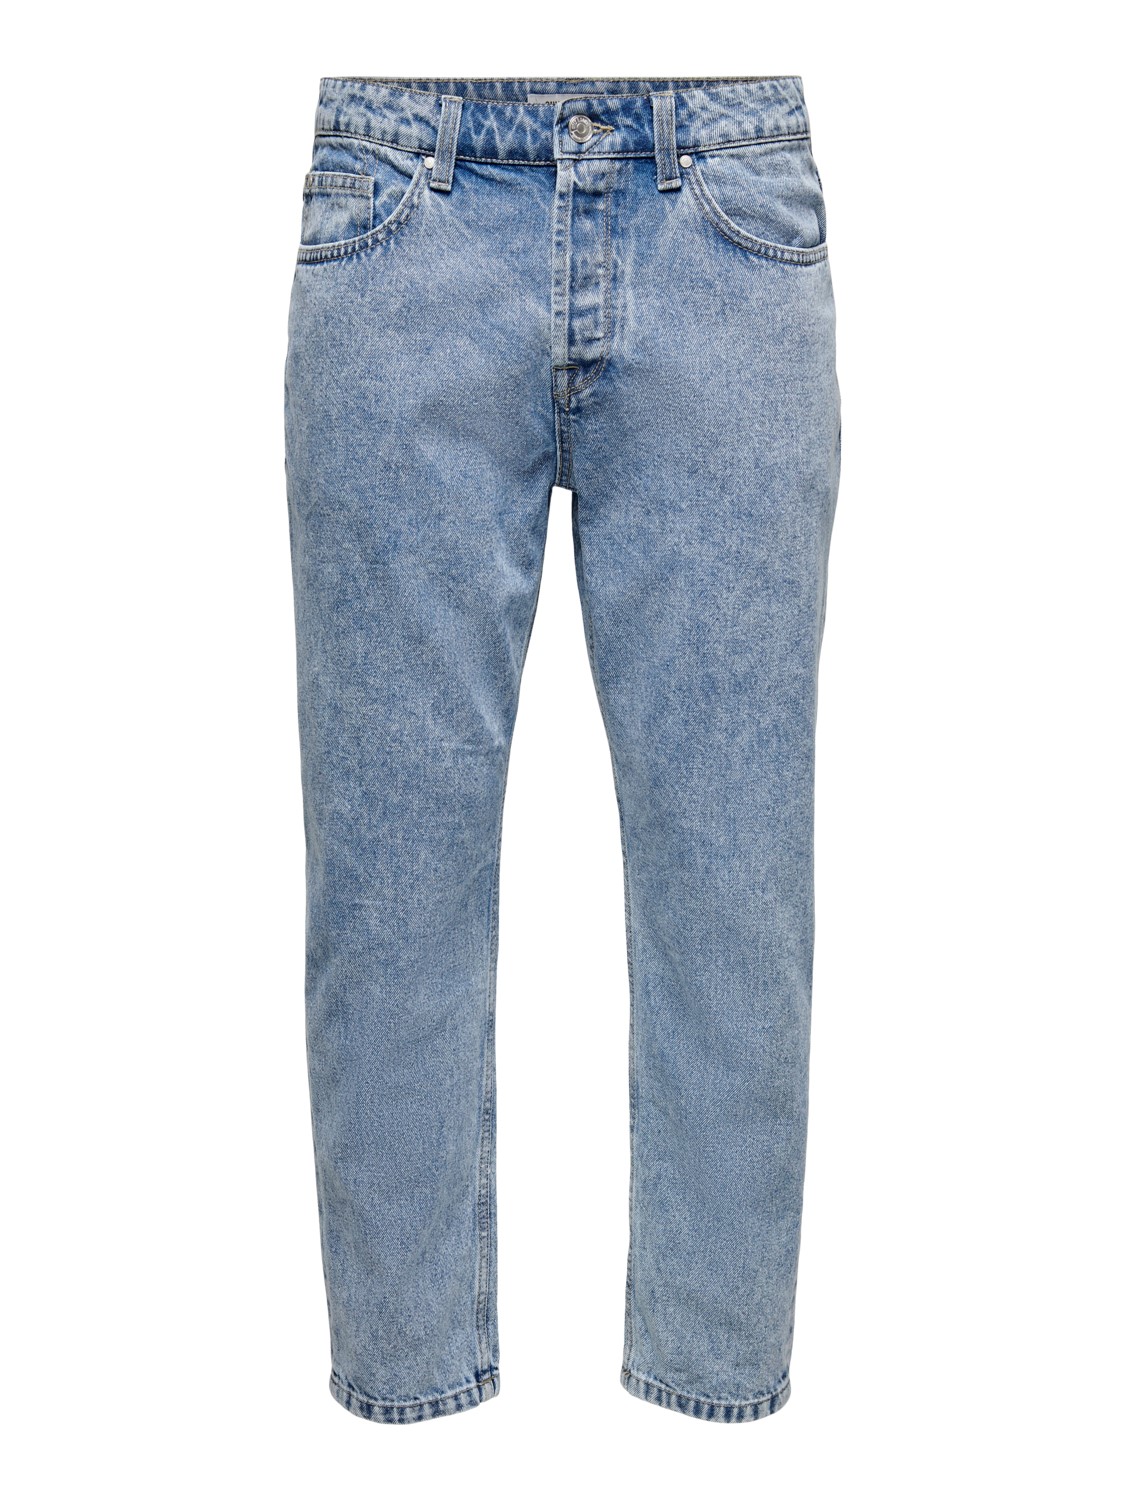 Only & Sons Herren Jeans ONSAVI BEAM PK 1421 - Regular Fit - Blau - Blue Denim